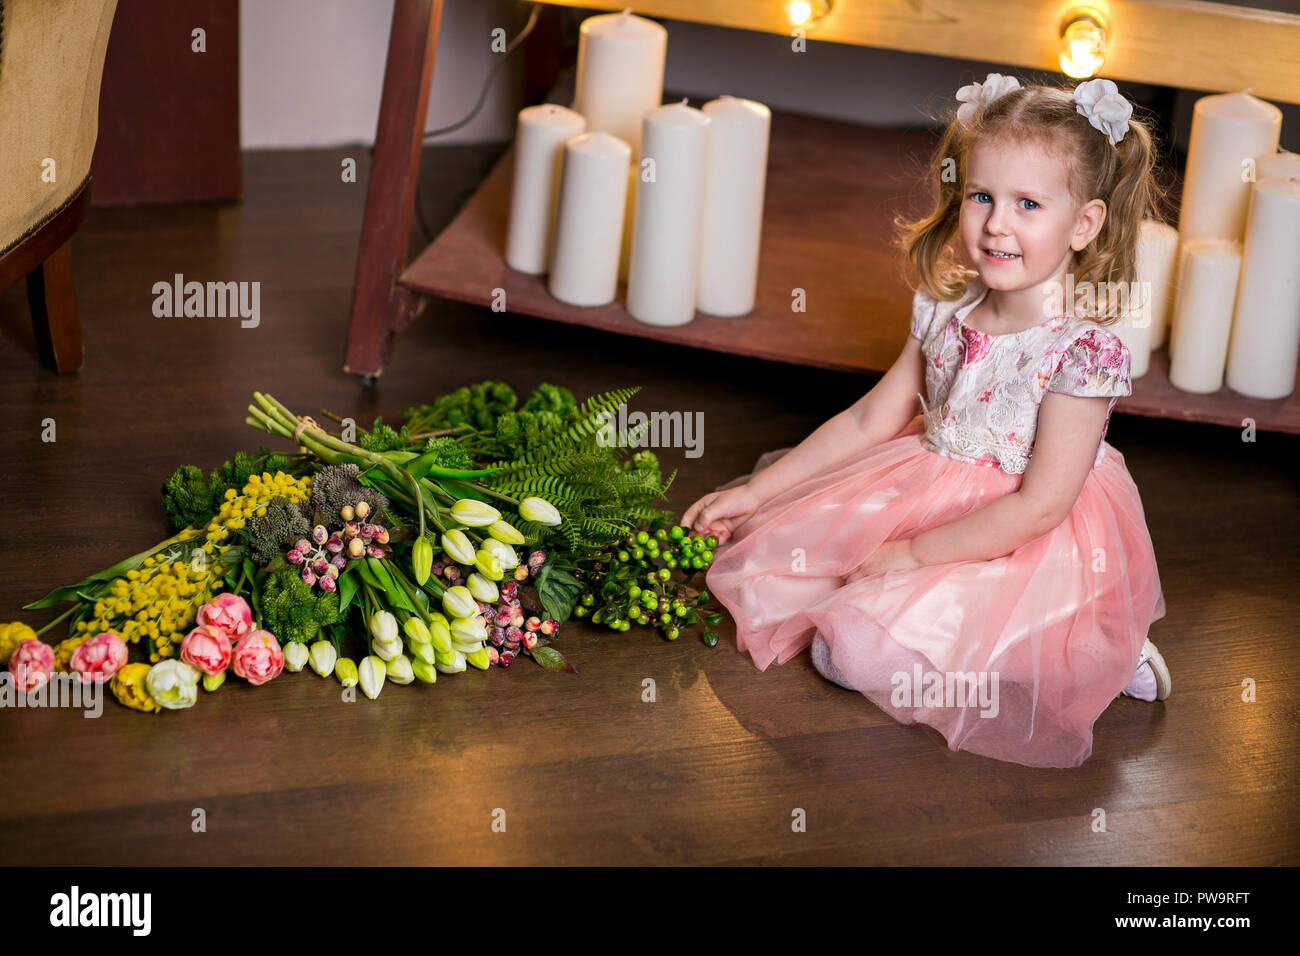 Blue-eyed jolie fille dans une robe rose est assis sur le sol près d'un bouquet de tulipes, de mimosas, de petits fruits et de la verdure. Banque D'Images